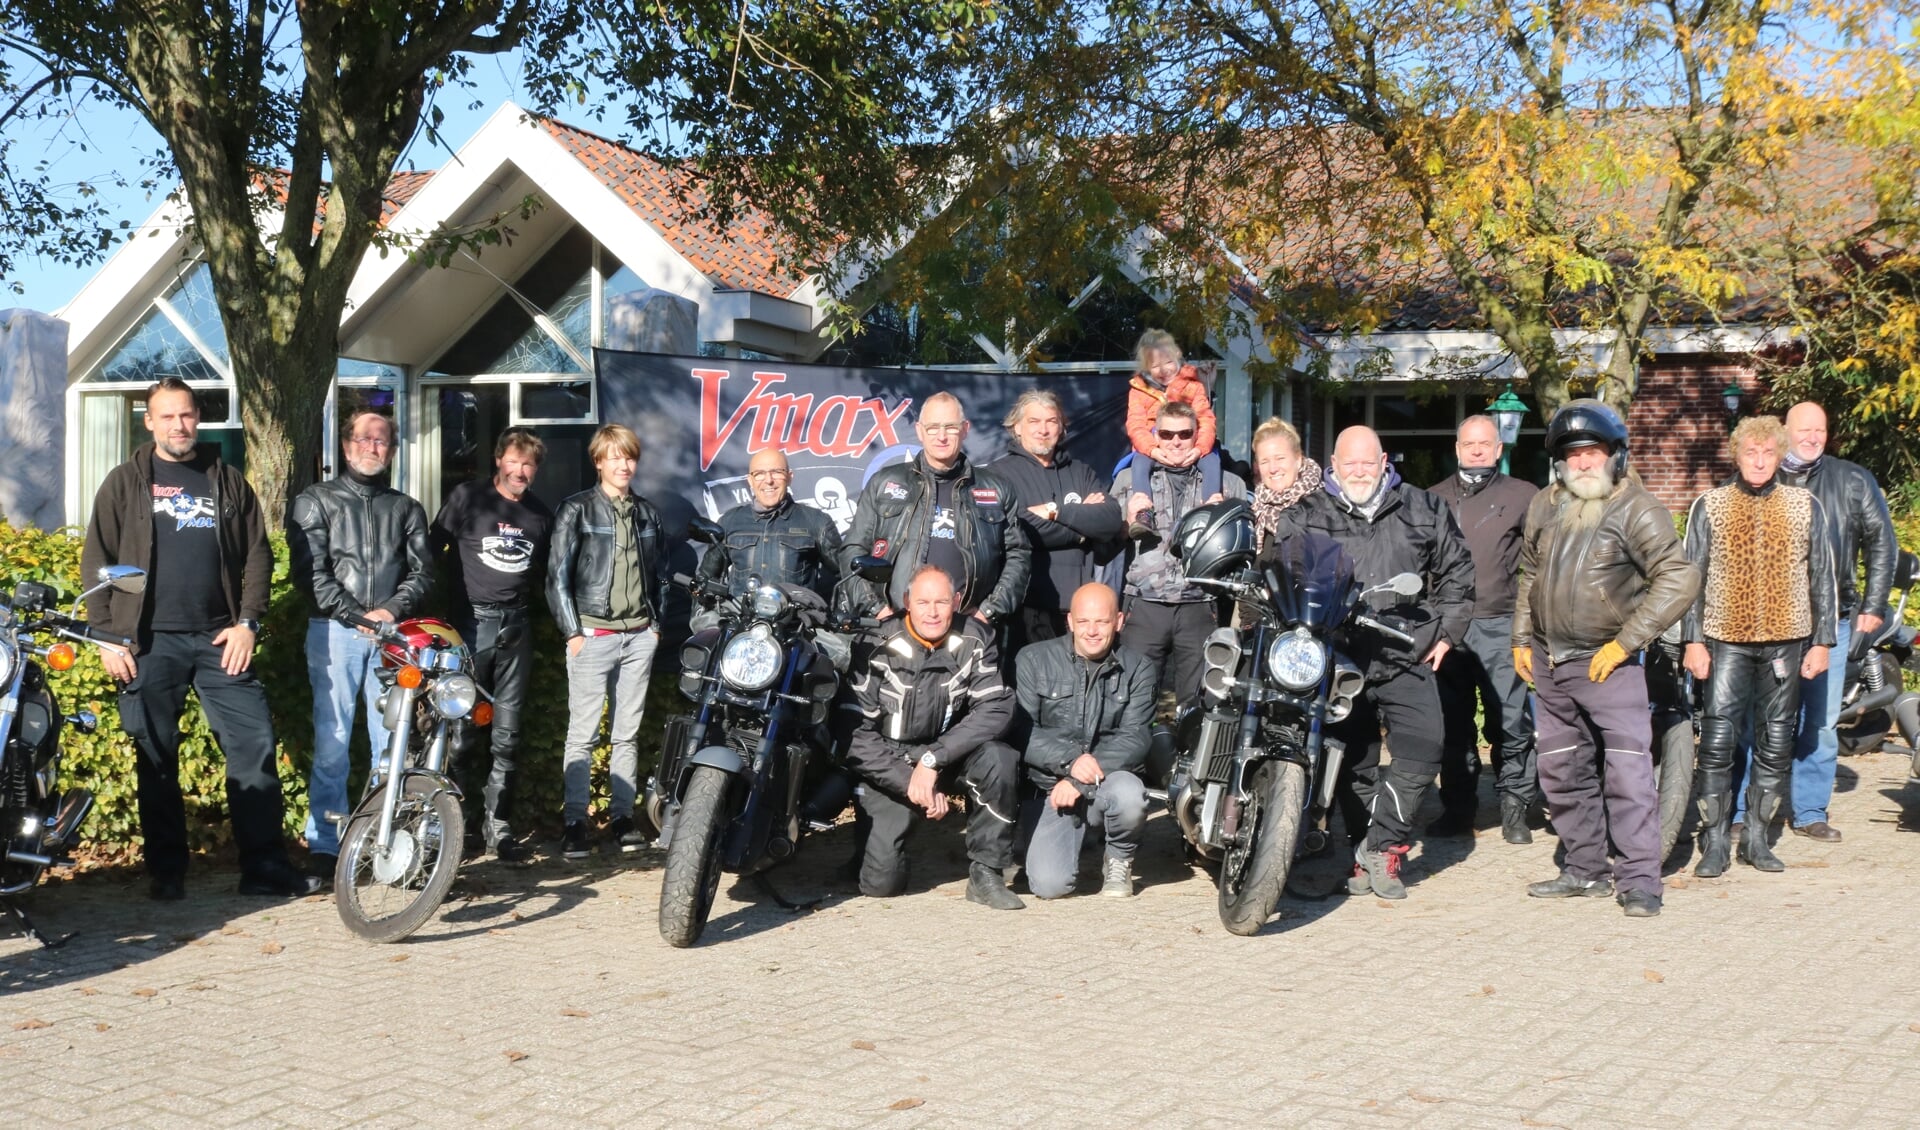 Vmax-clubleden voor aanvang van de rit vanaf 'De Heksenlaak'. Foto: Arjen Dieperink